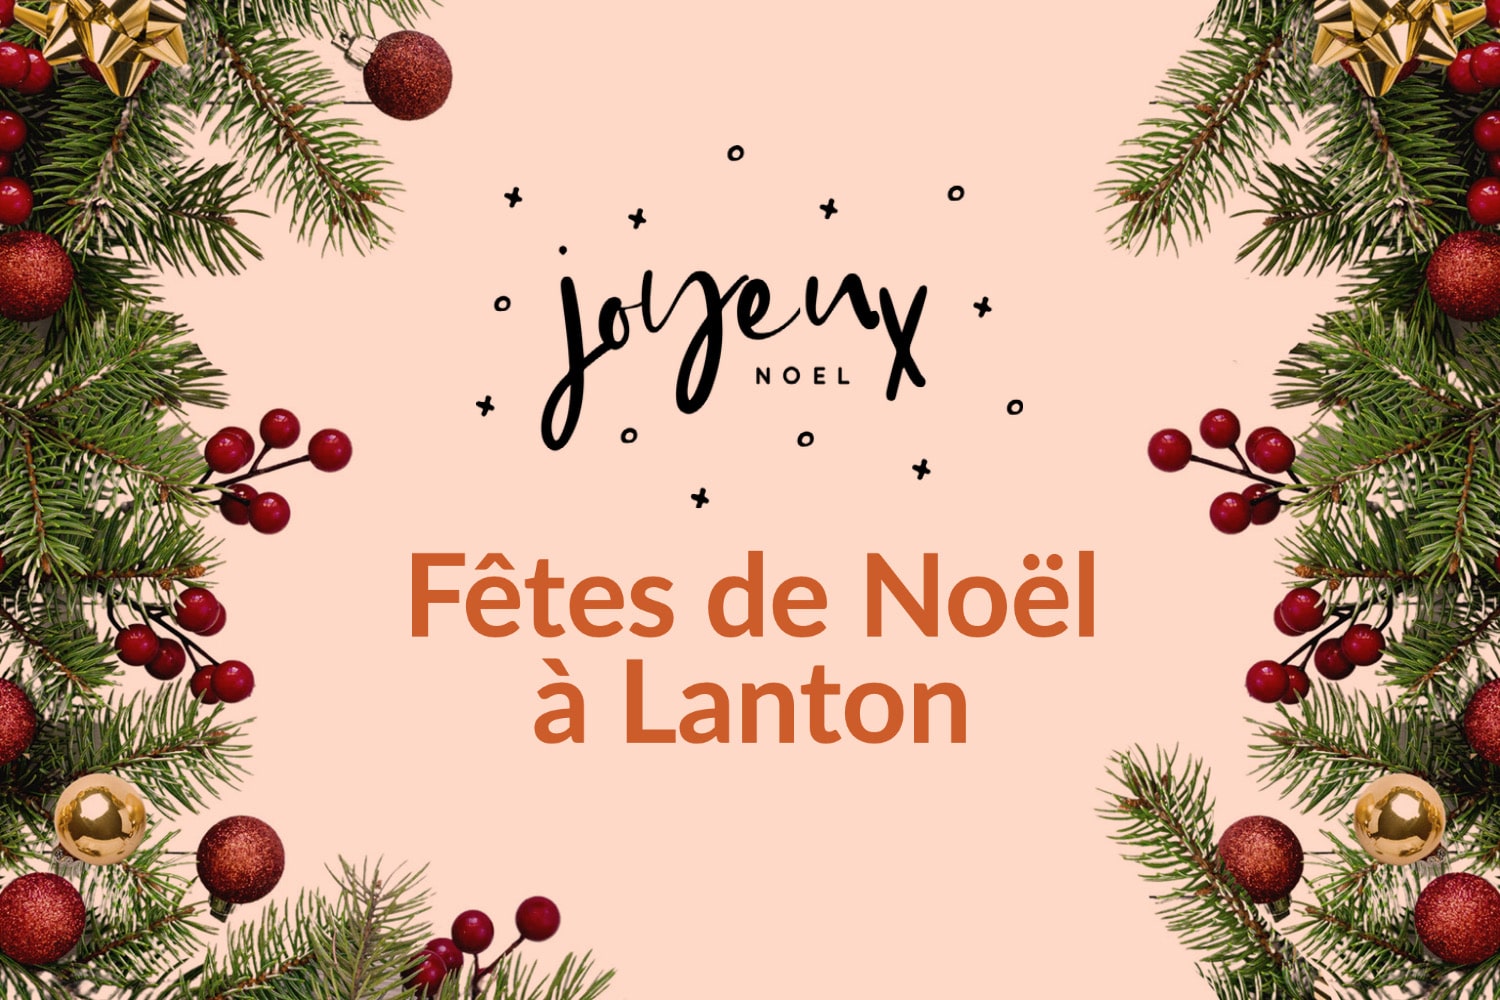 Lanton a célébré Noël de manière originale et conviviale avec son village de Noël les 13, 14 et 15 décembre 2022